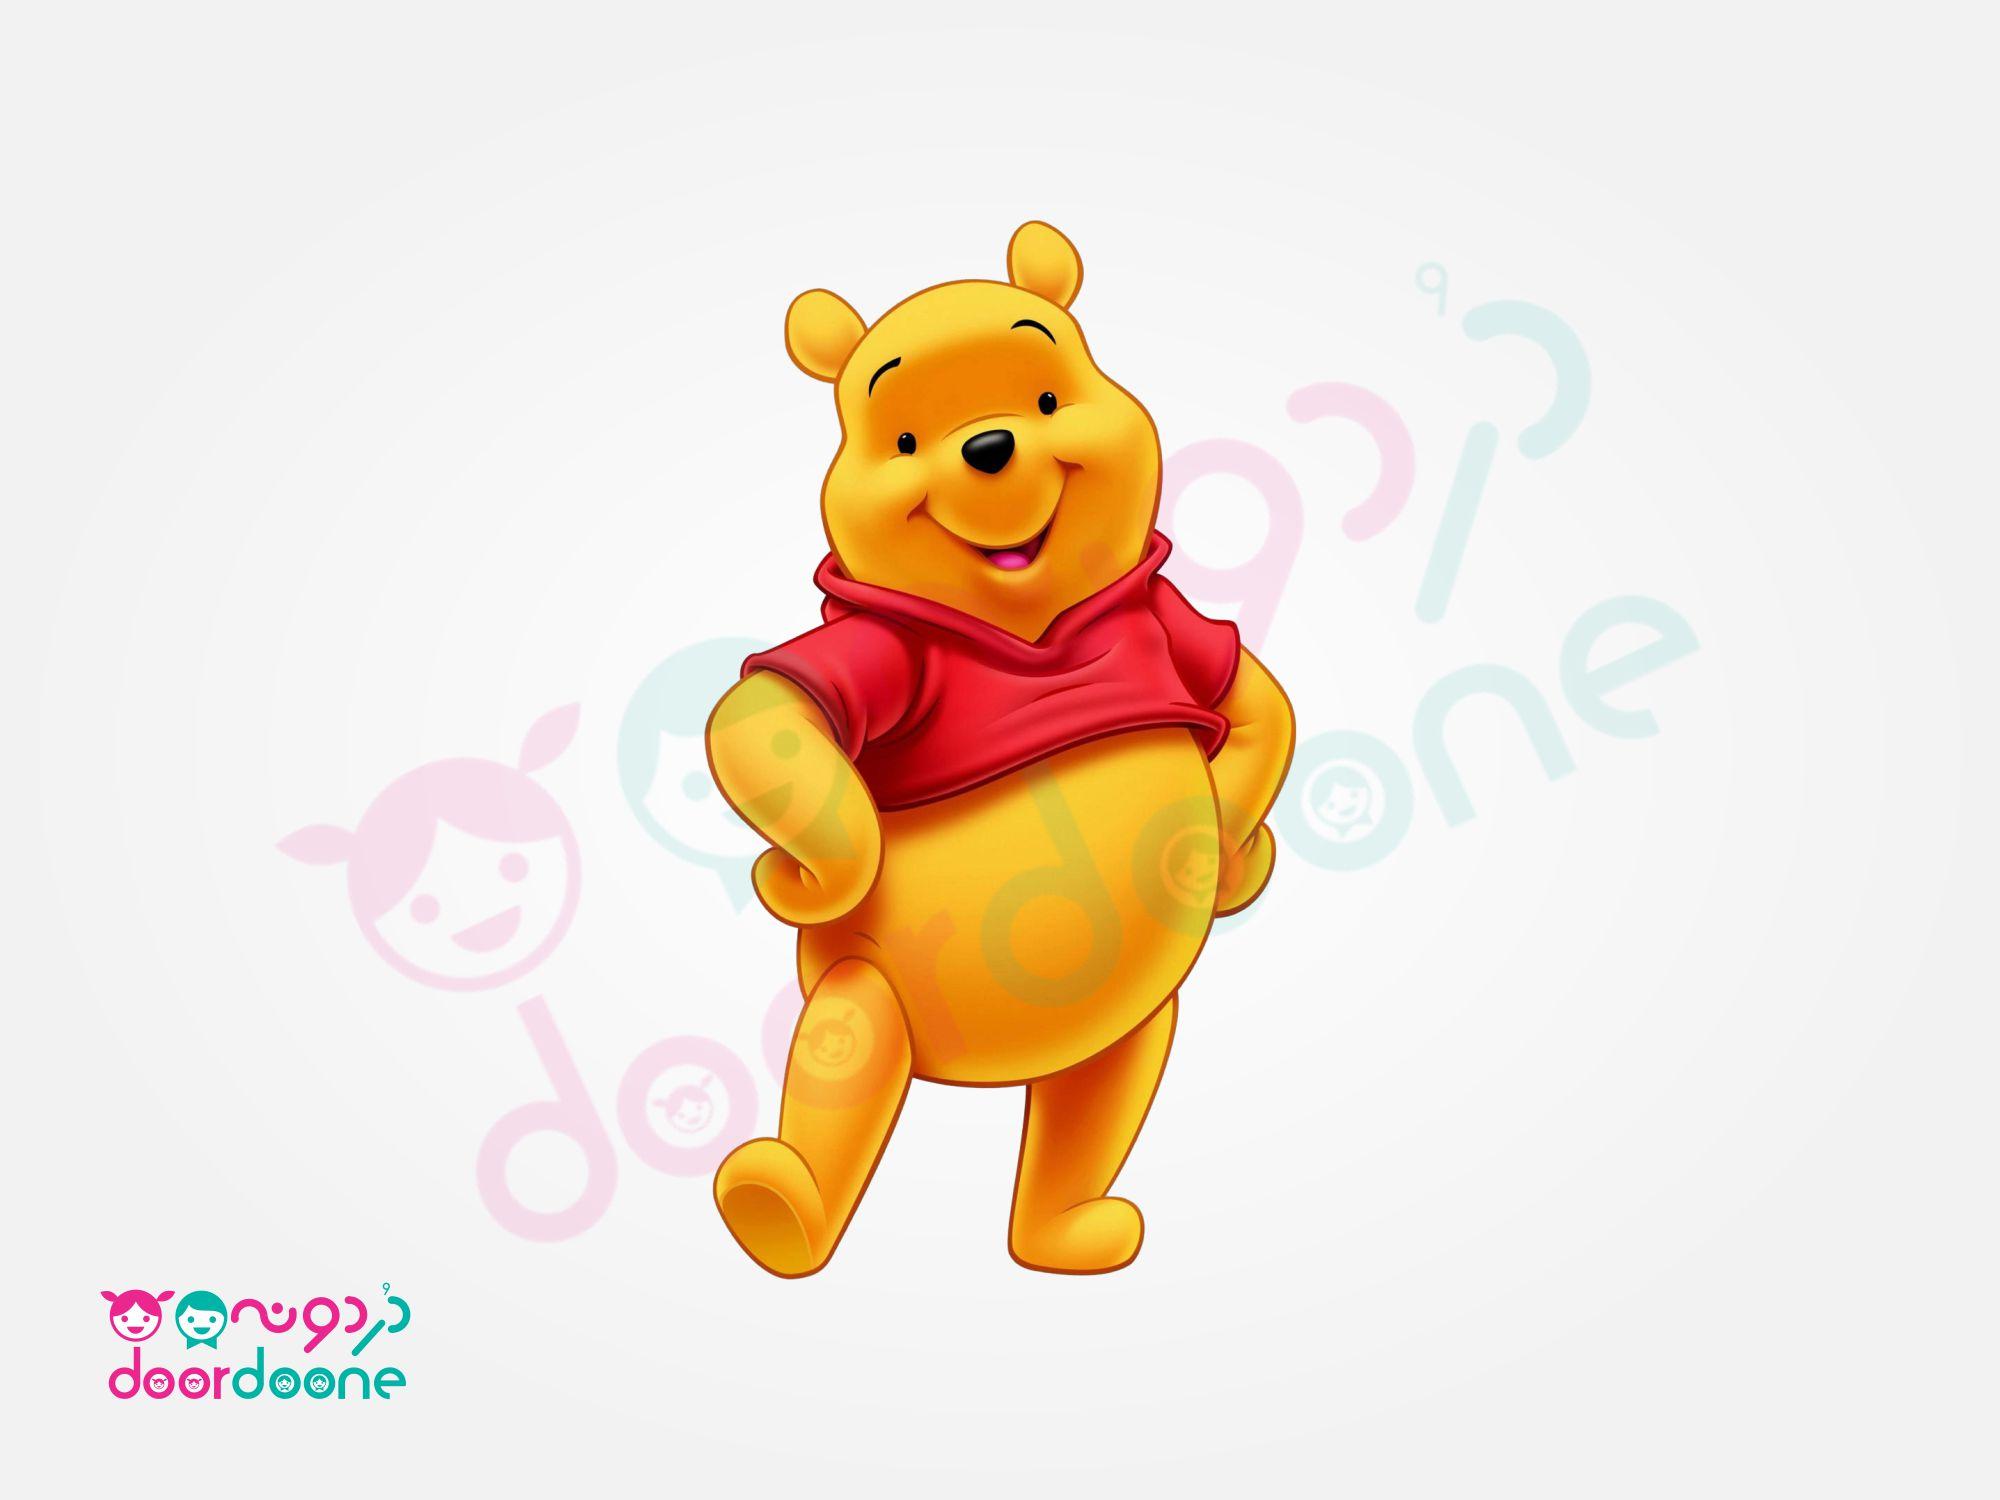 استند وينی پو (Winnie the Pooh) ارتفاع 35 سانتیمتر